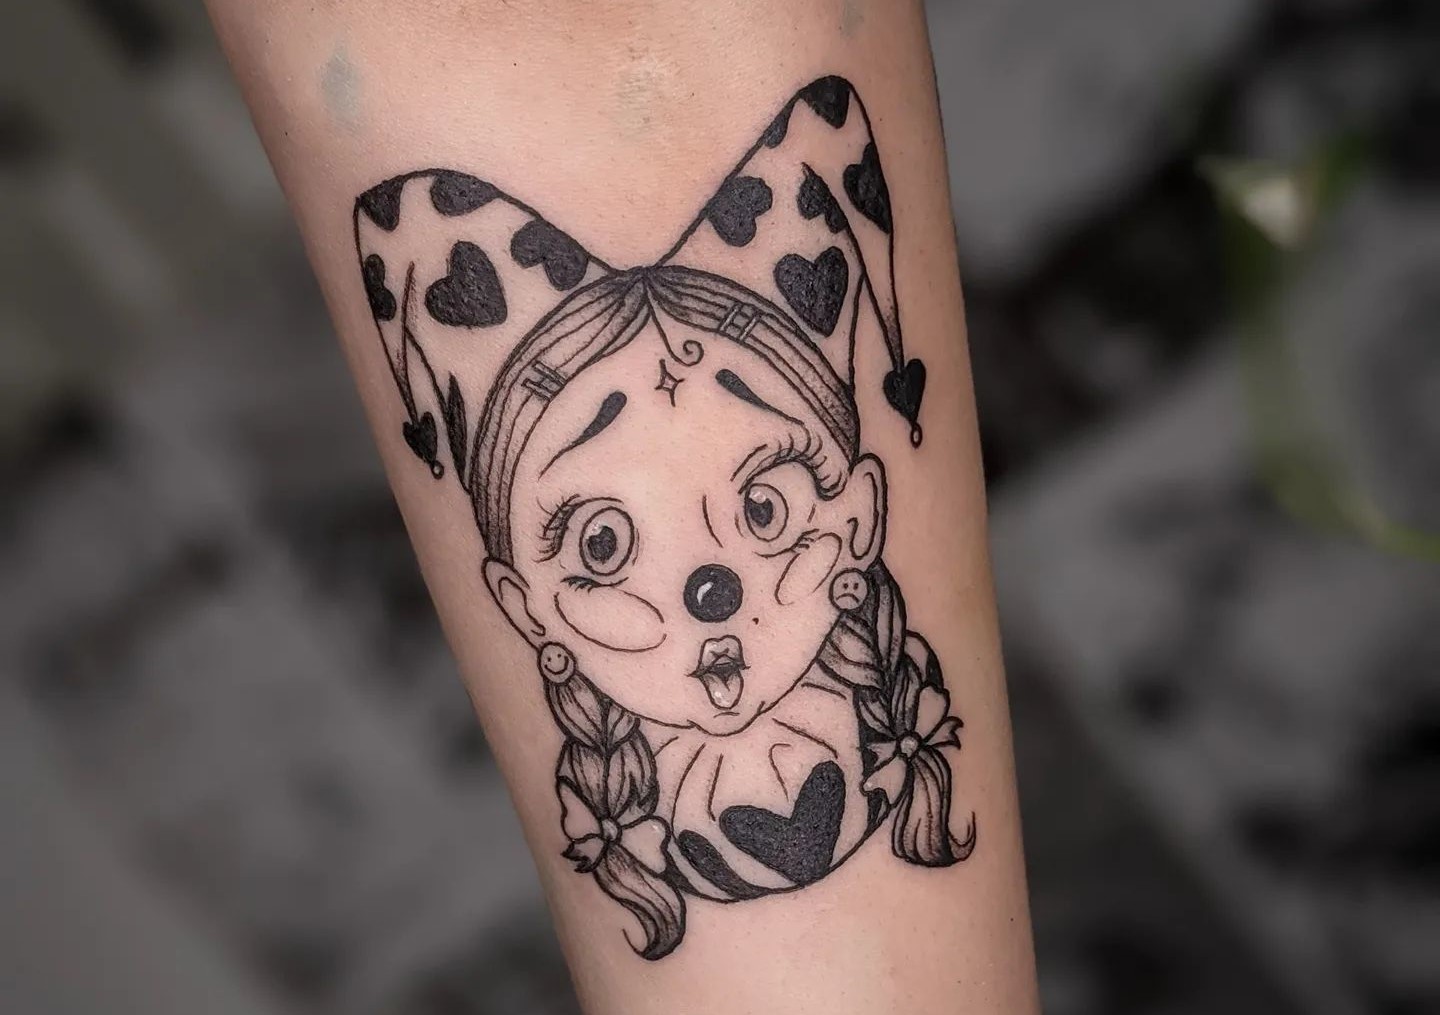 Krusty tags tattoo ideas  World Tattoo Gallery